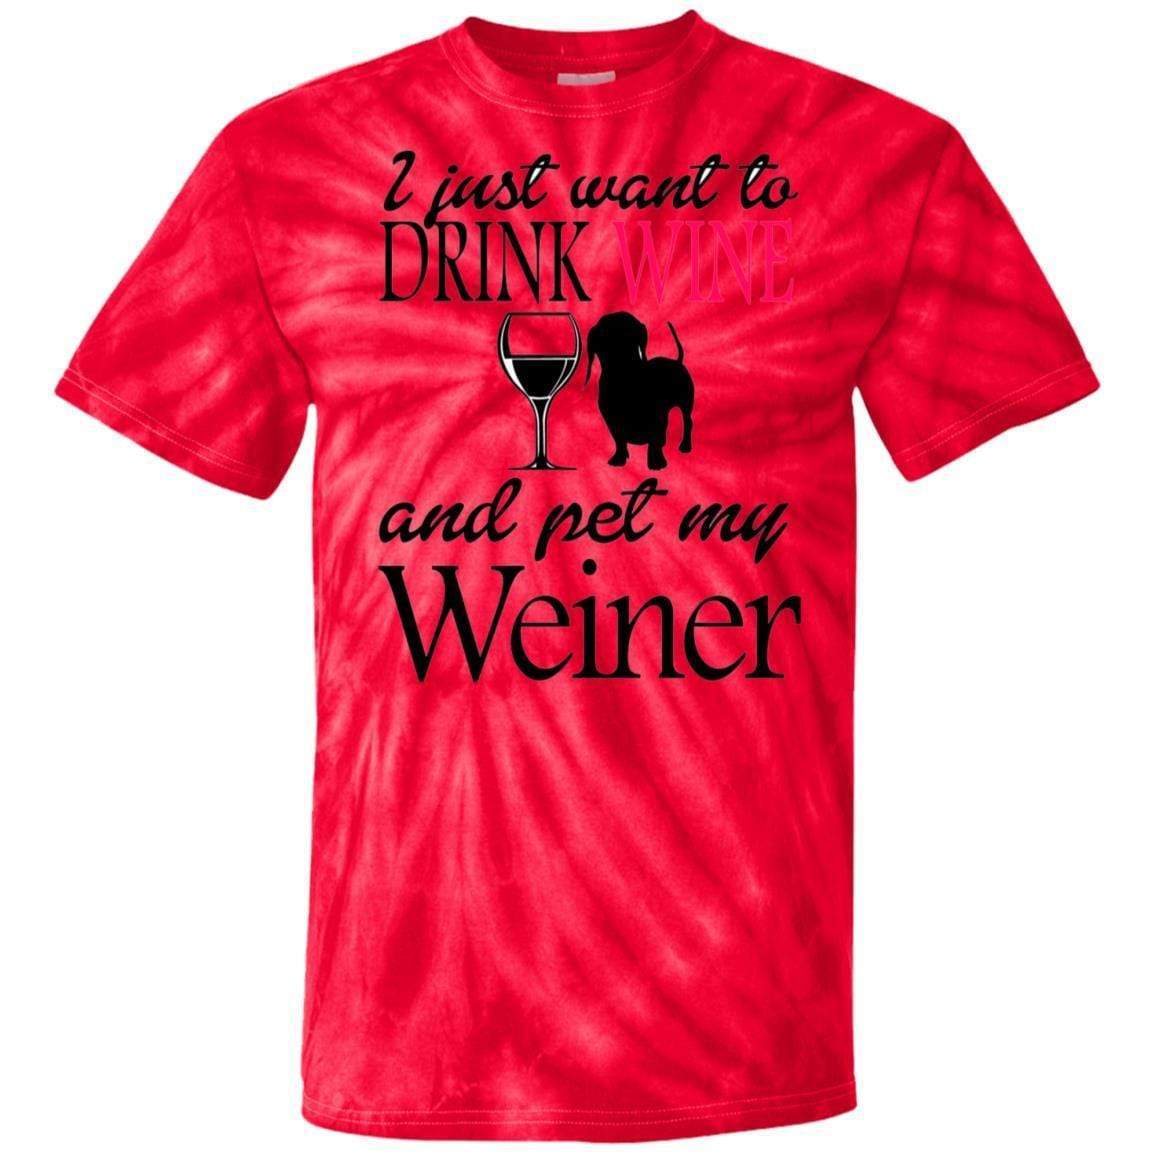 T-Shirts SpiderRed / S WineyBitches.Co "Drink wine, Pet Weiner" 100% Cotton Tie Dye T-Shirt WineyBitchesCo